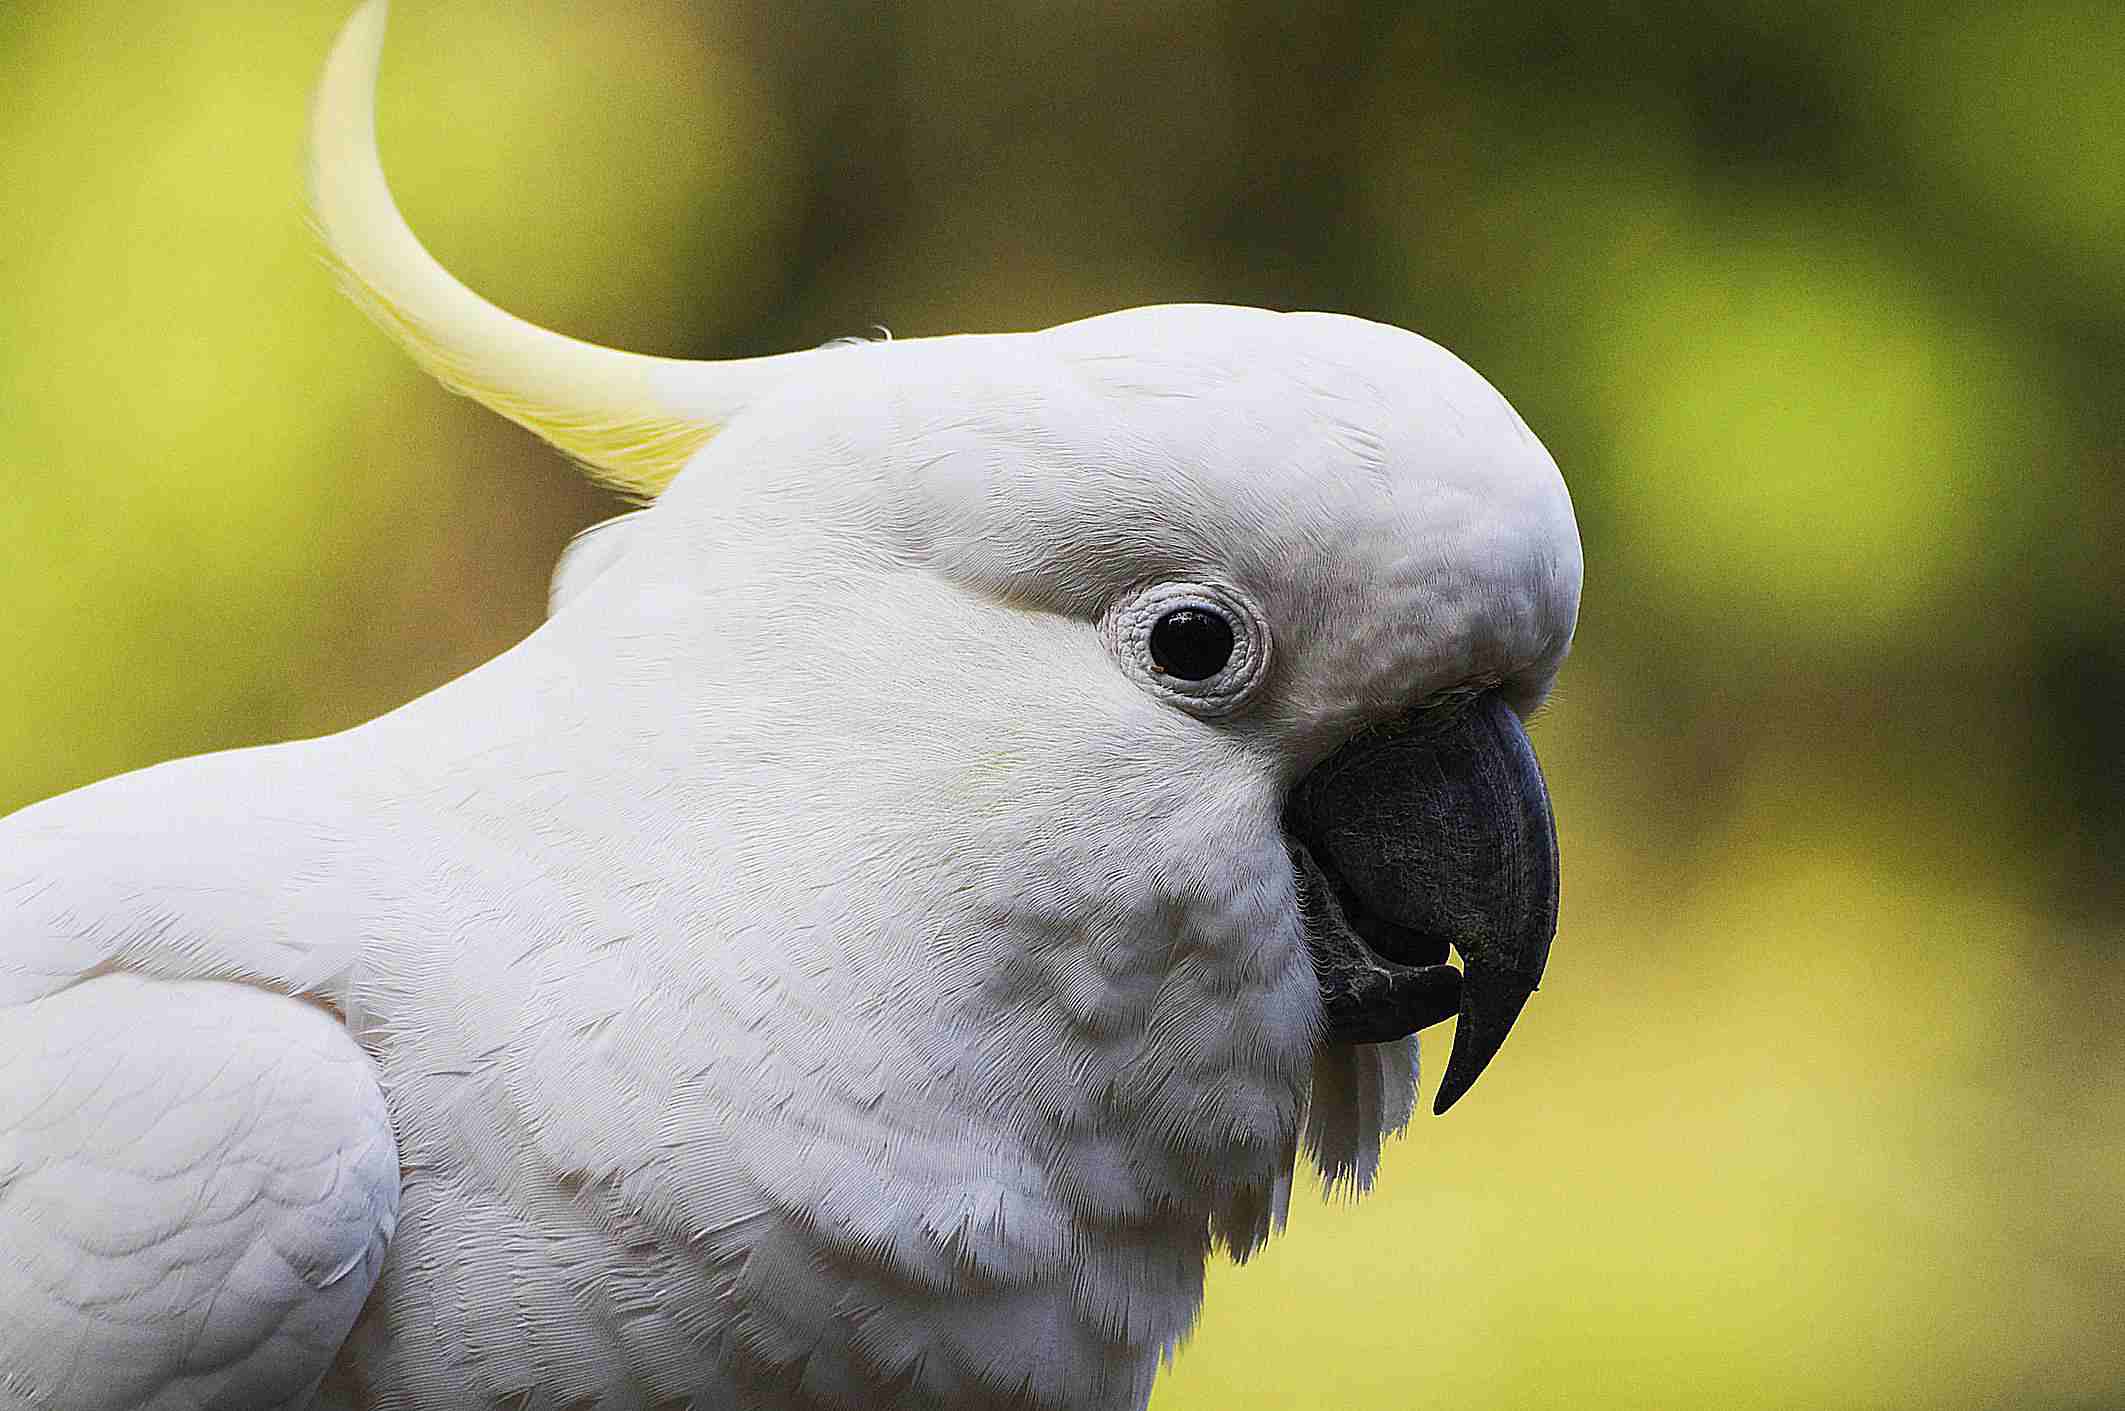 Close-up shot of a cockatoo